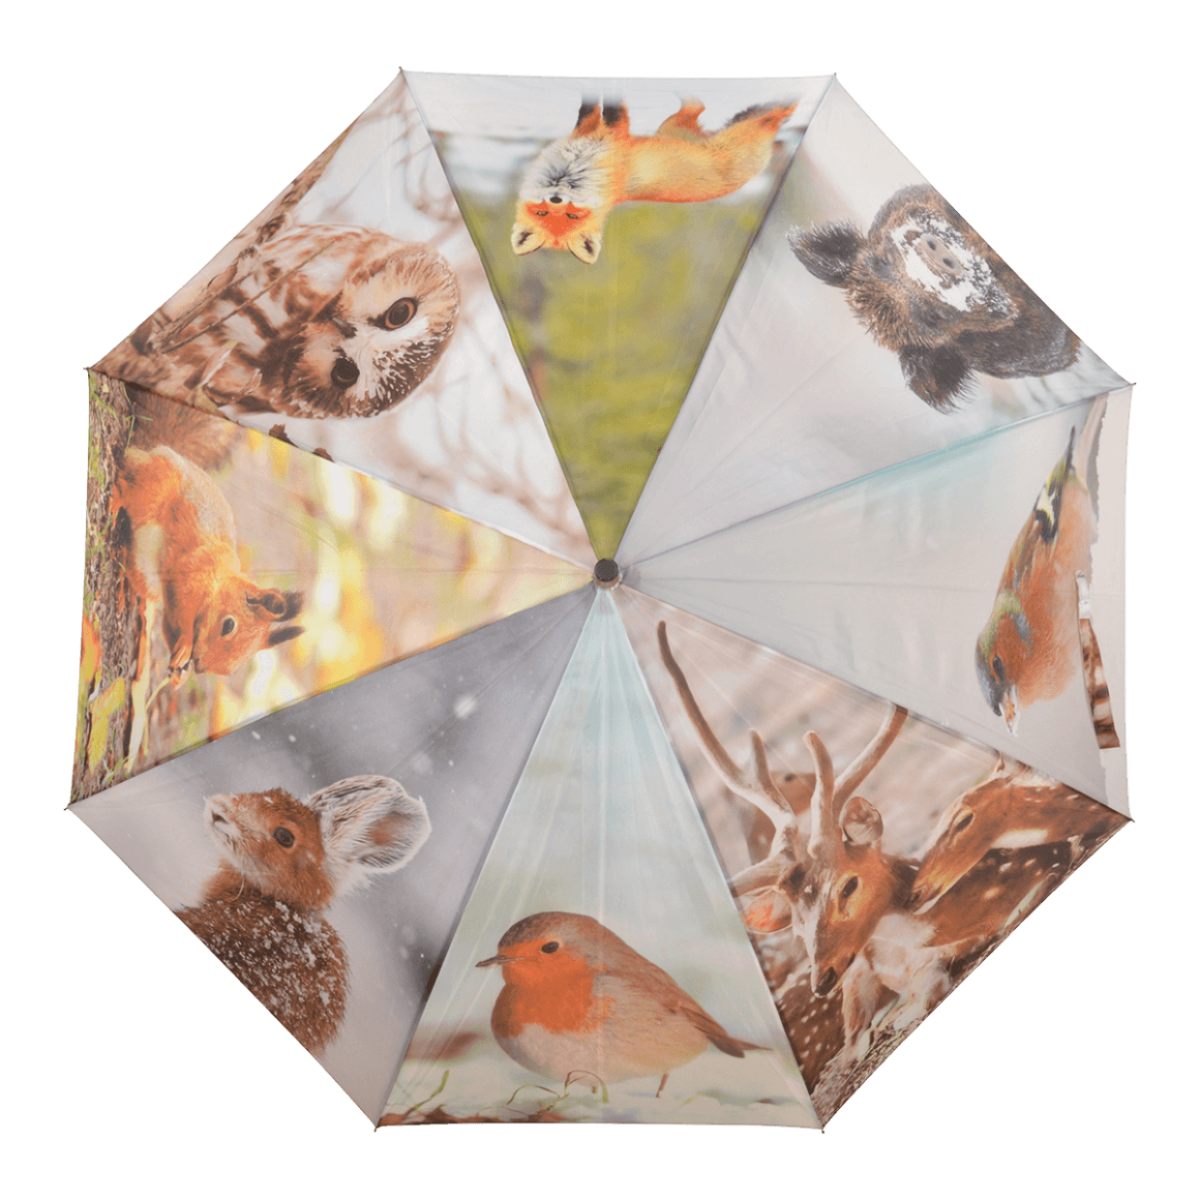 Paraplu winterprint - Esschert Design